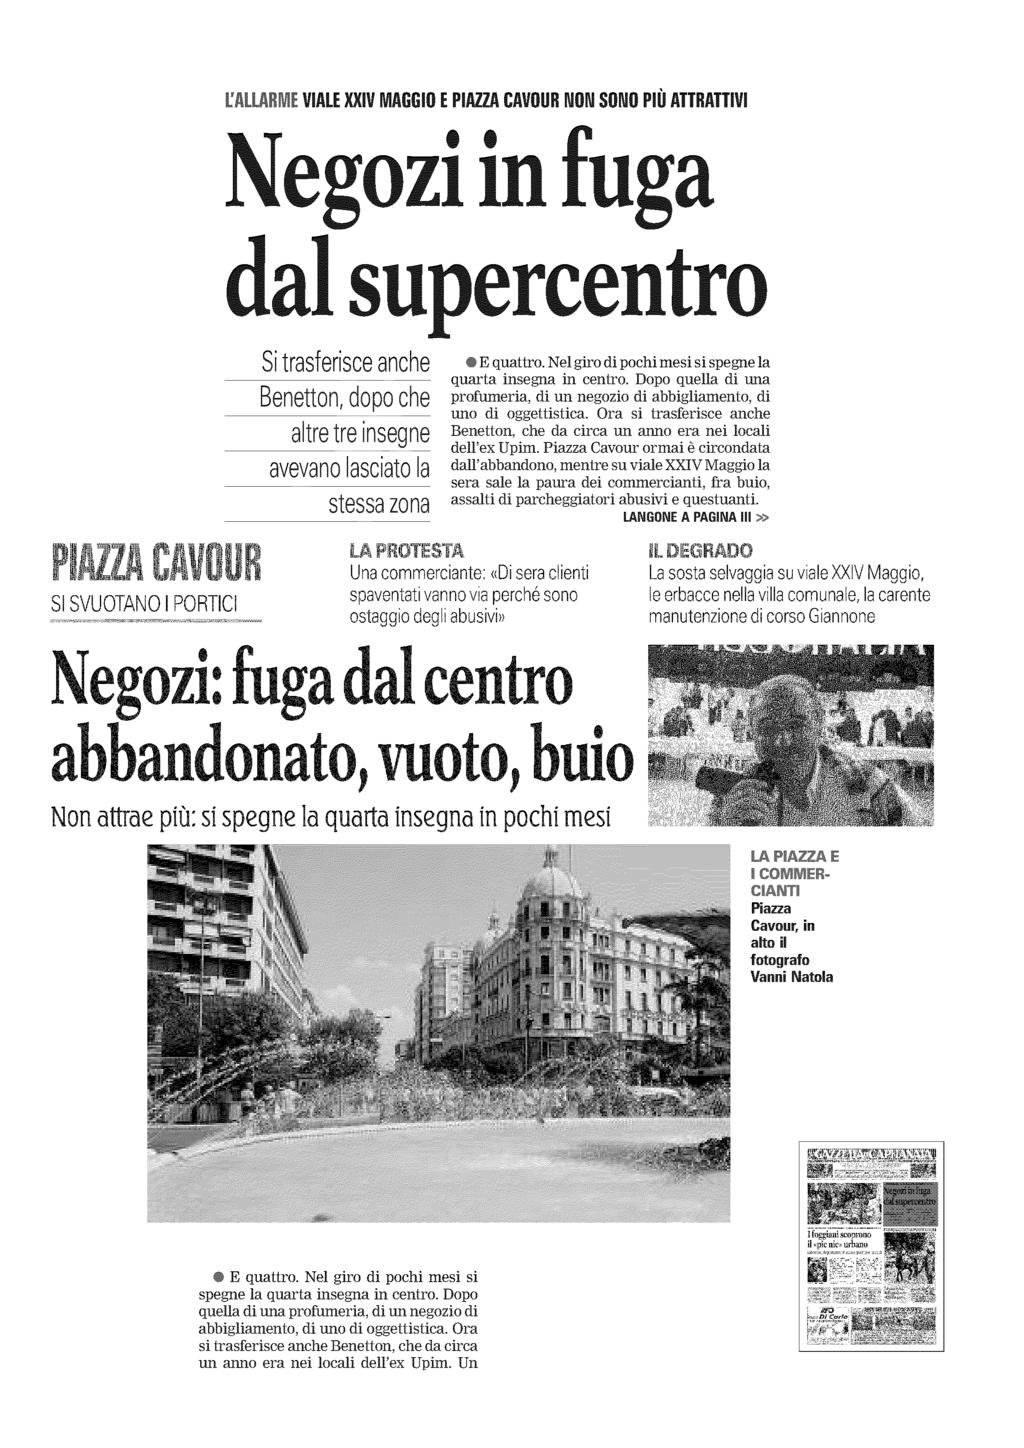 Gazzetta del Mezzogiorno Capitanata 30-MAG-2011 Diffusione: n.d. Lettori: n.